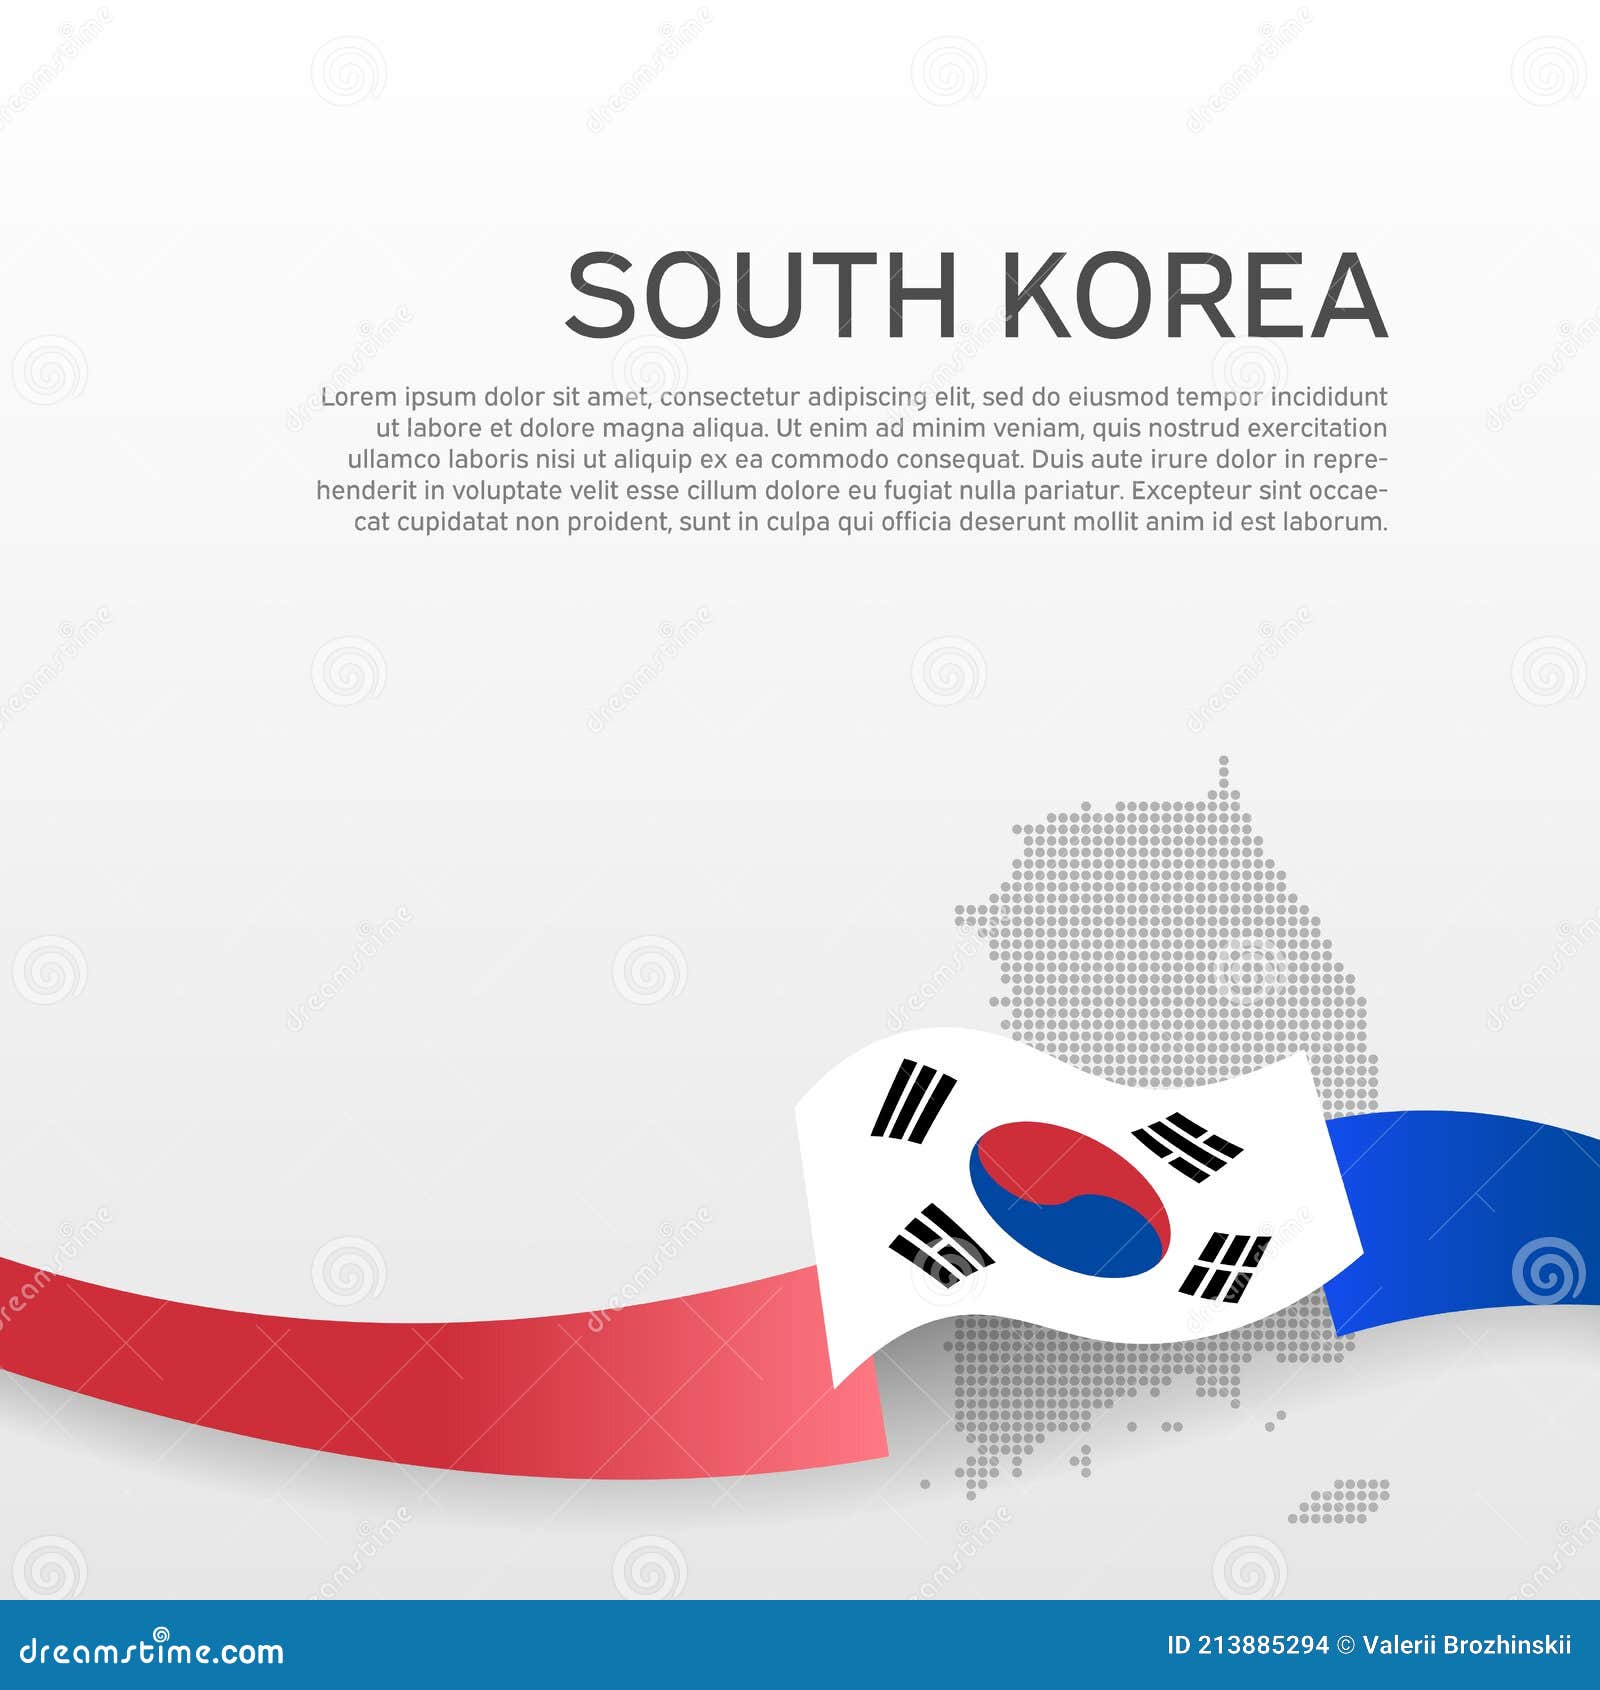 Cờ và bản đồ nền trắng Hàn Quốc. Thiết kế brochure vector: Đây là thiết kế brochure vector đầy đủ nhất về cờ và bản đồ nền trắng Hàn Quốc. Với những hình ảnh đẹp và các chi tiết tuyệt vời, bạn sẽ có cái nhìn tổng quát về một trong những quốc gia đẹp nhất thế giới. Hãy xem hình ảnh này để khám phá vẻ đẹp của Hàn Quốc thông qua thiết kế đậm chất văn hóa.